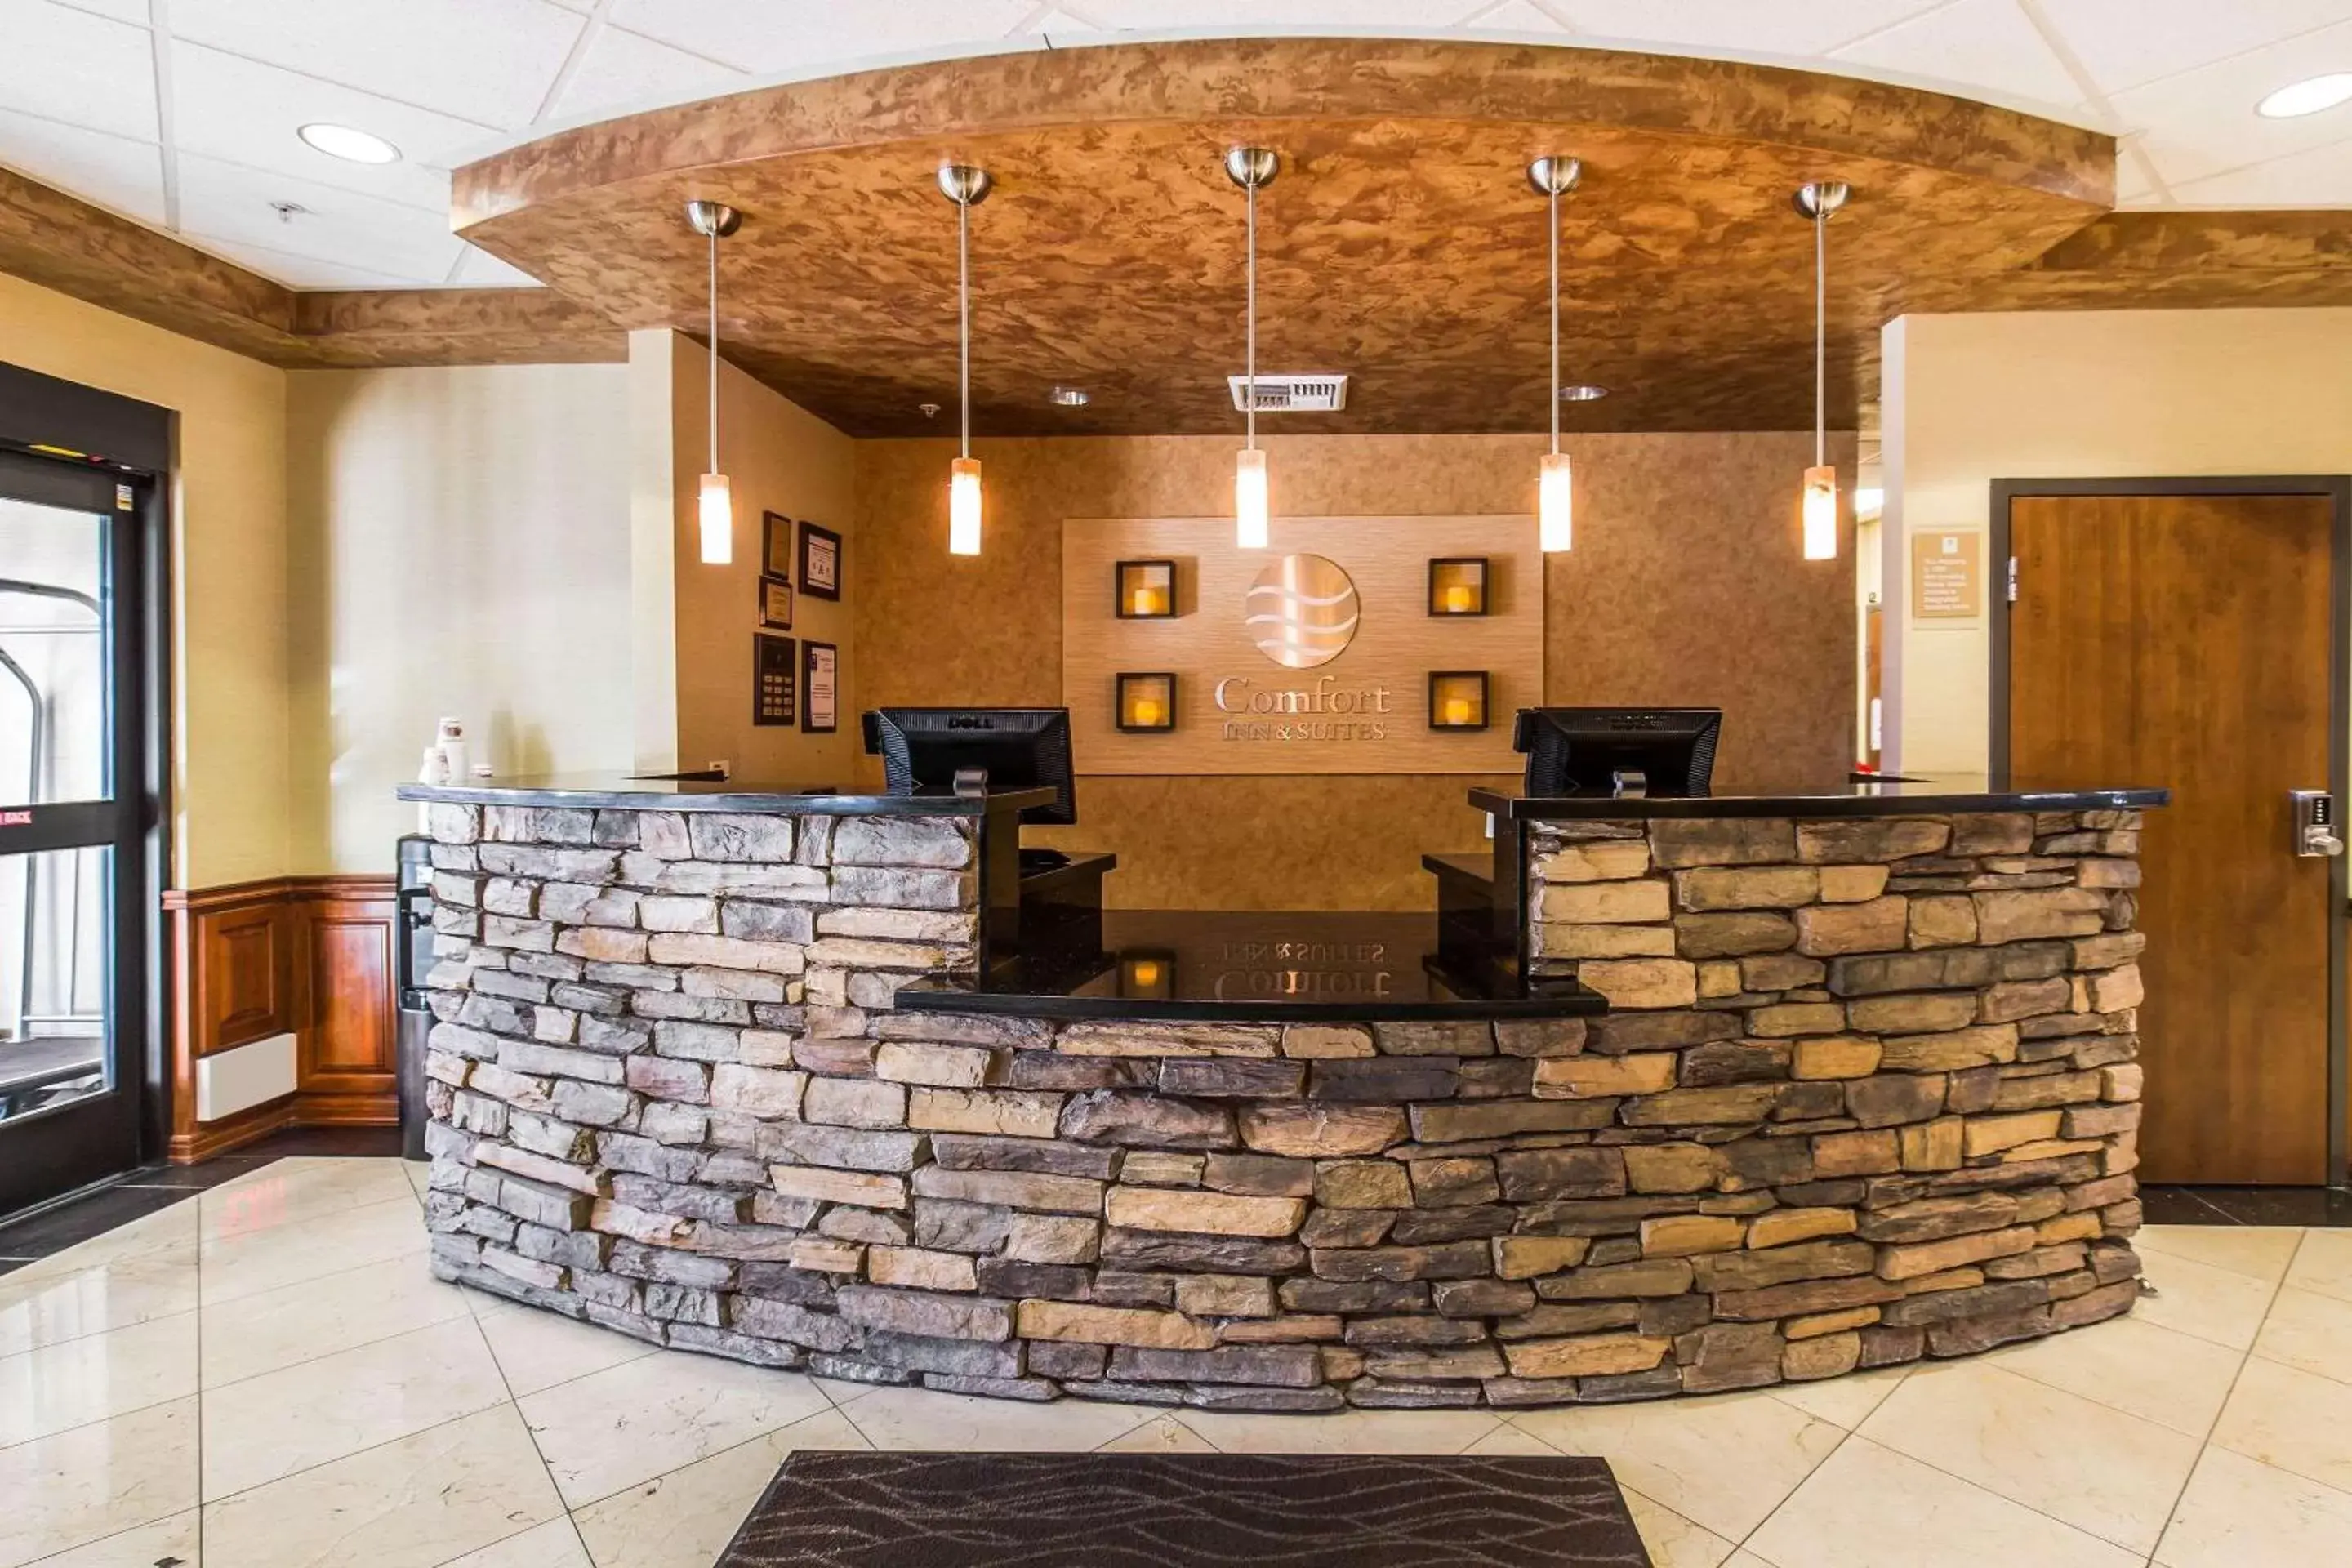 Lobby or reception in Comfort Inn & Suites Henderson - Las Vegas